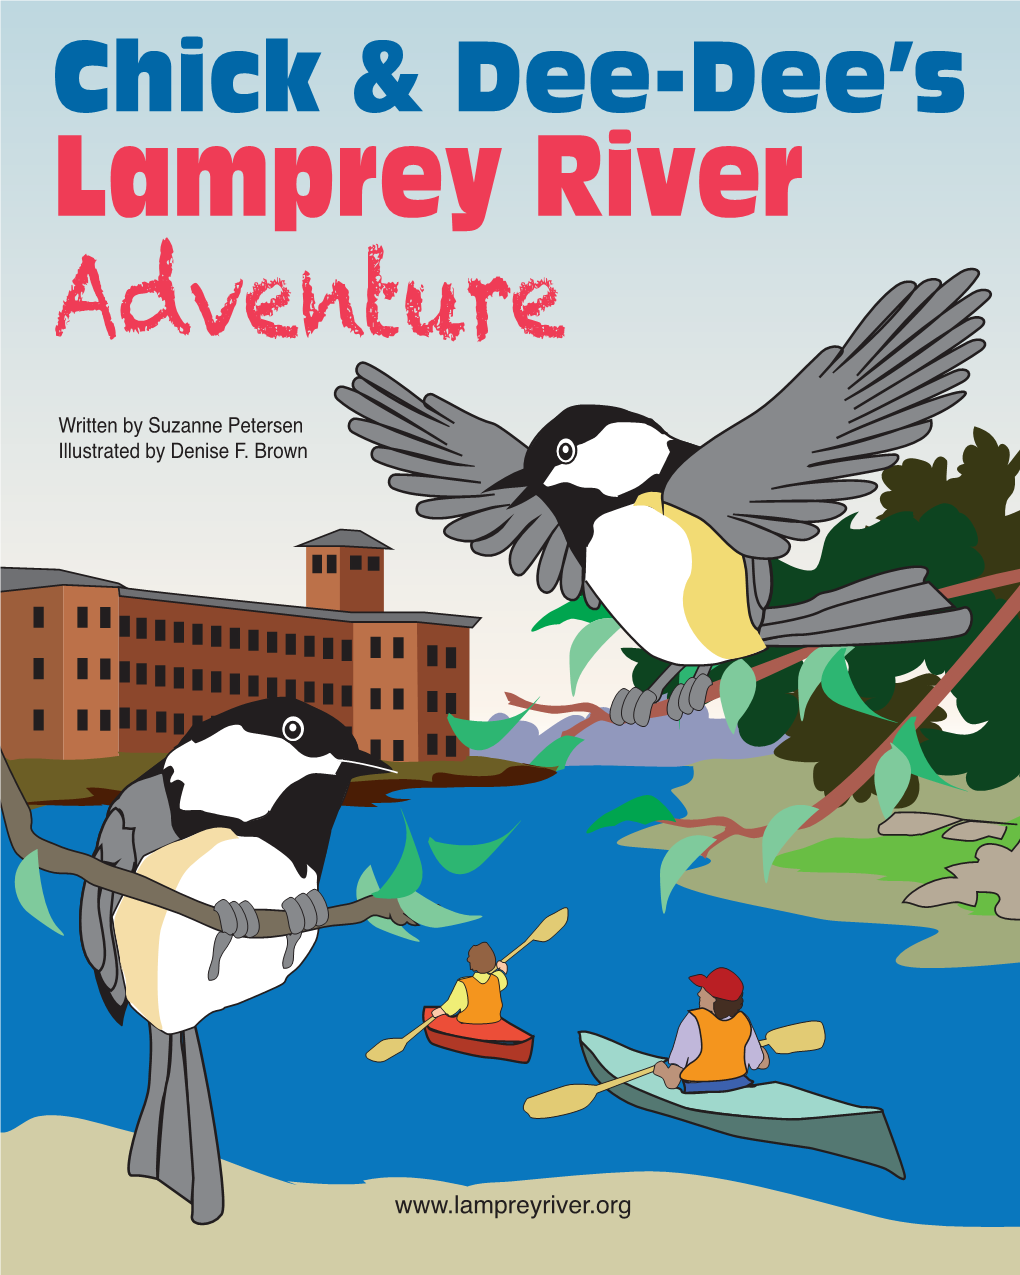 Chick & Dee Dee's Lamprey Adventure